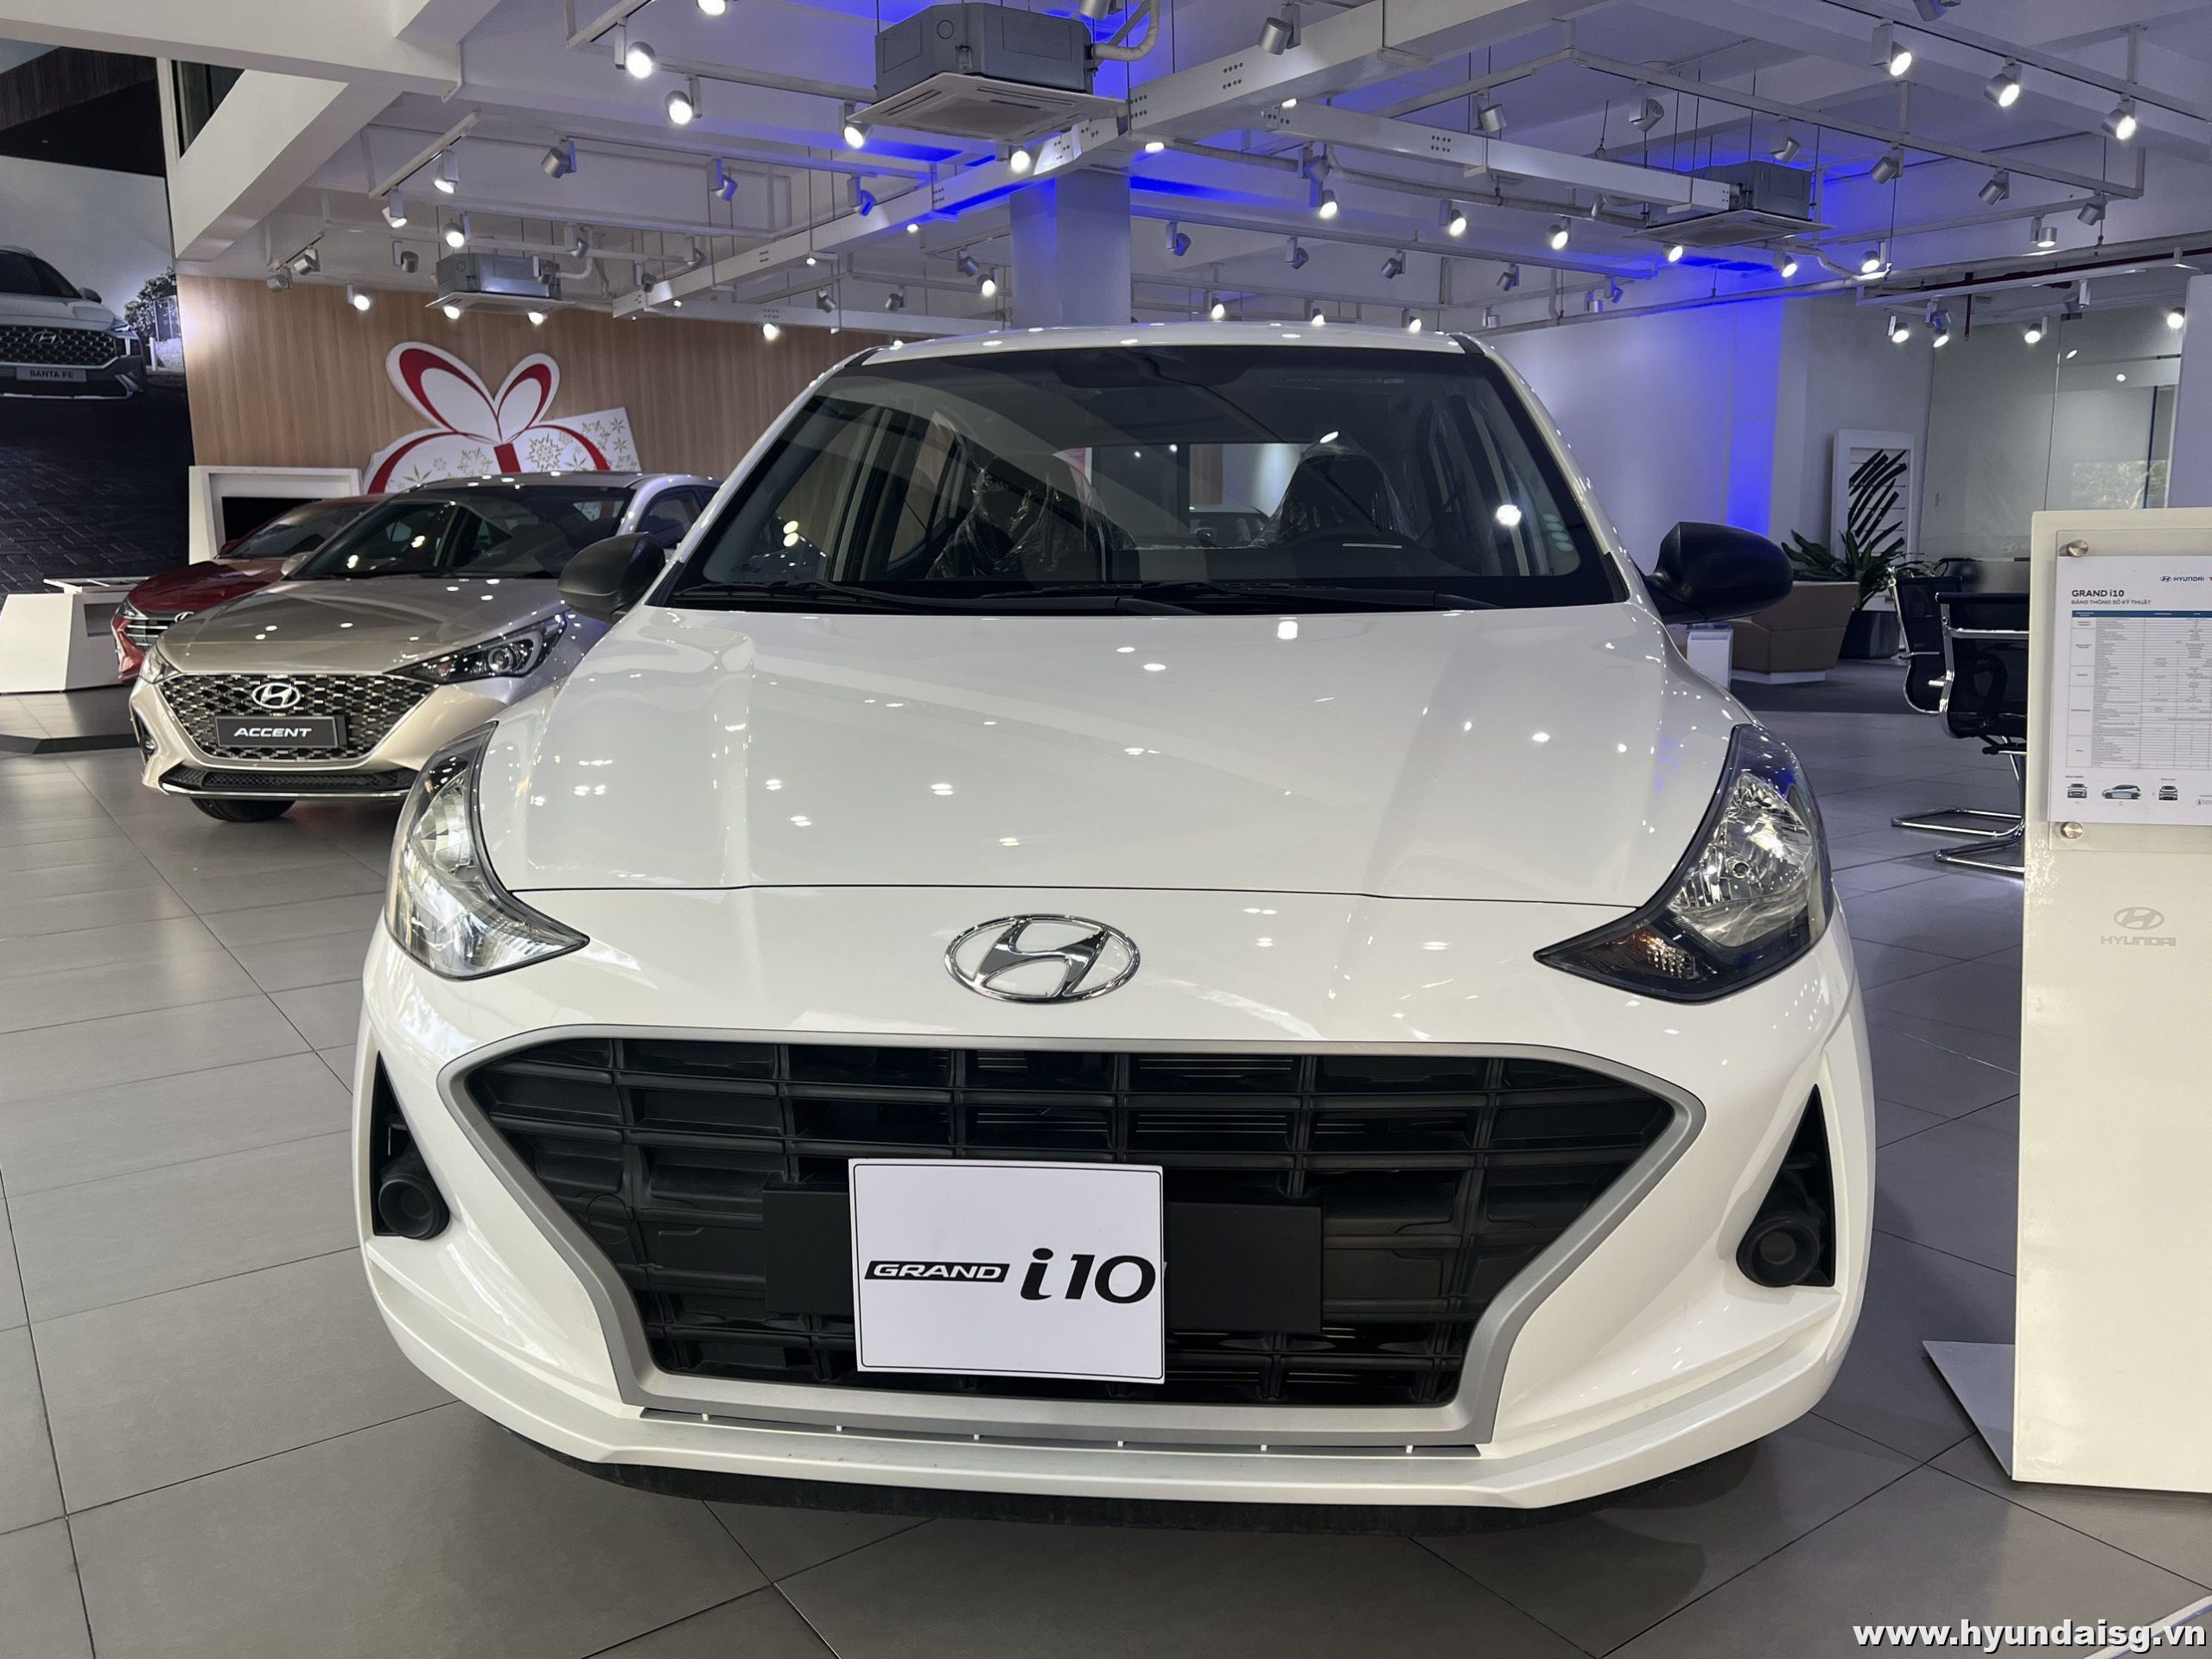 Hyundai i10 HB - Chiếc xe đến từ Hyundai với thiết kế thể thao và hiện đại. Không chỉ vậy, Hyundai i10 HB còn có nhiều tính năng đáng chú ý giúp bạn trải nghiệm lái xe thoải mái và tối ưu hóa hiệu suất của chiếc xe.